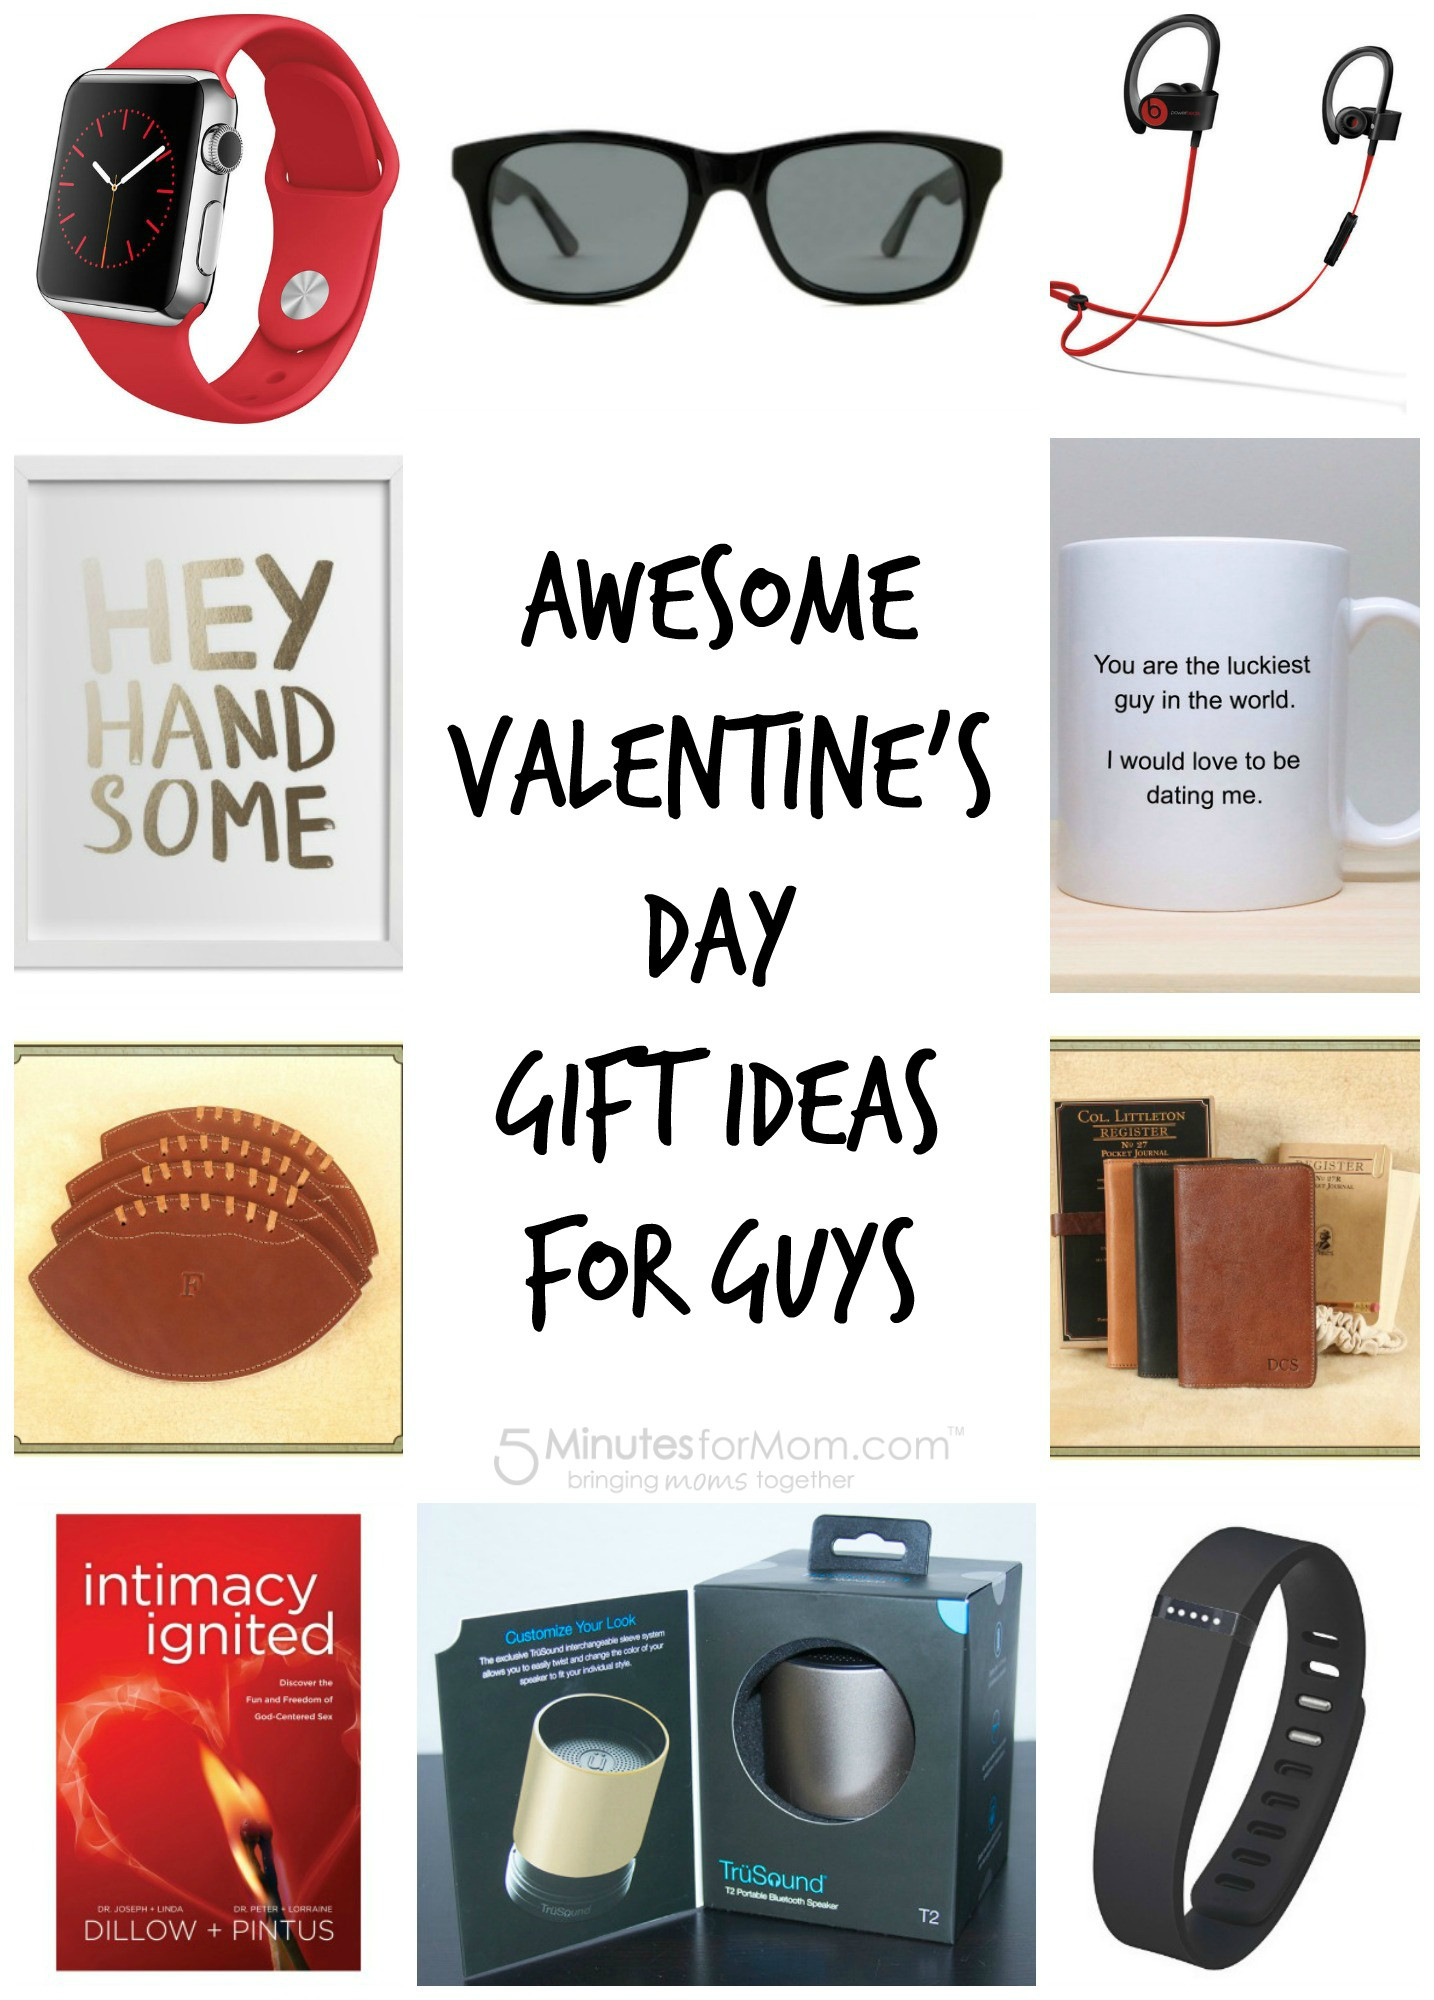 Best ideas about Valentine'S Day Gift Ideas For Guys
. Save or Pin Valentine s Day Gift Guide for Men Now.